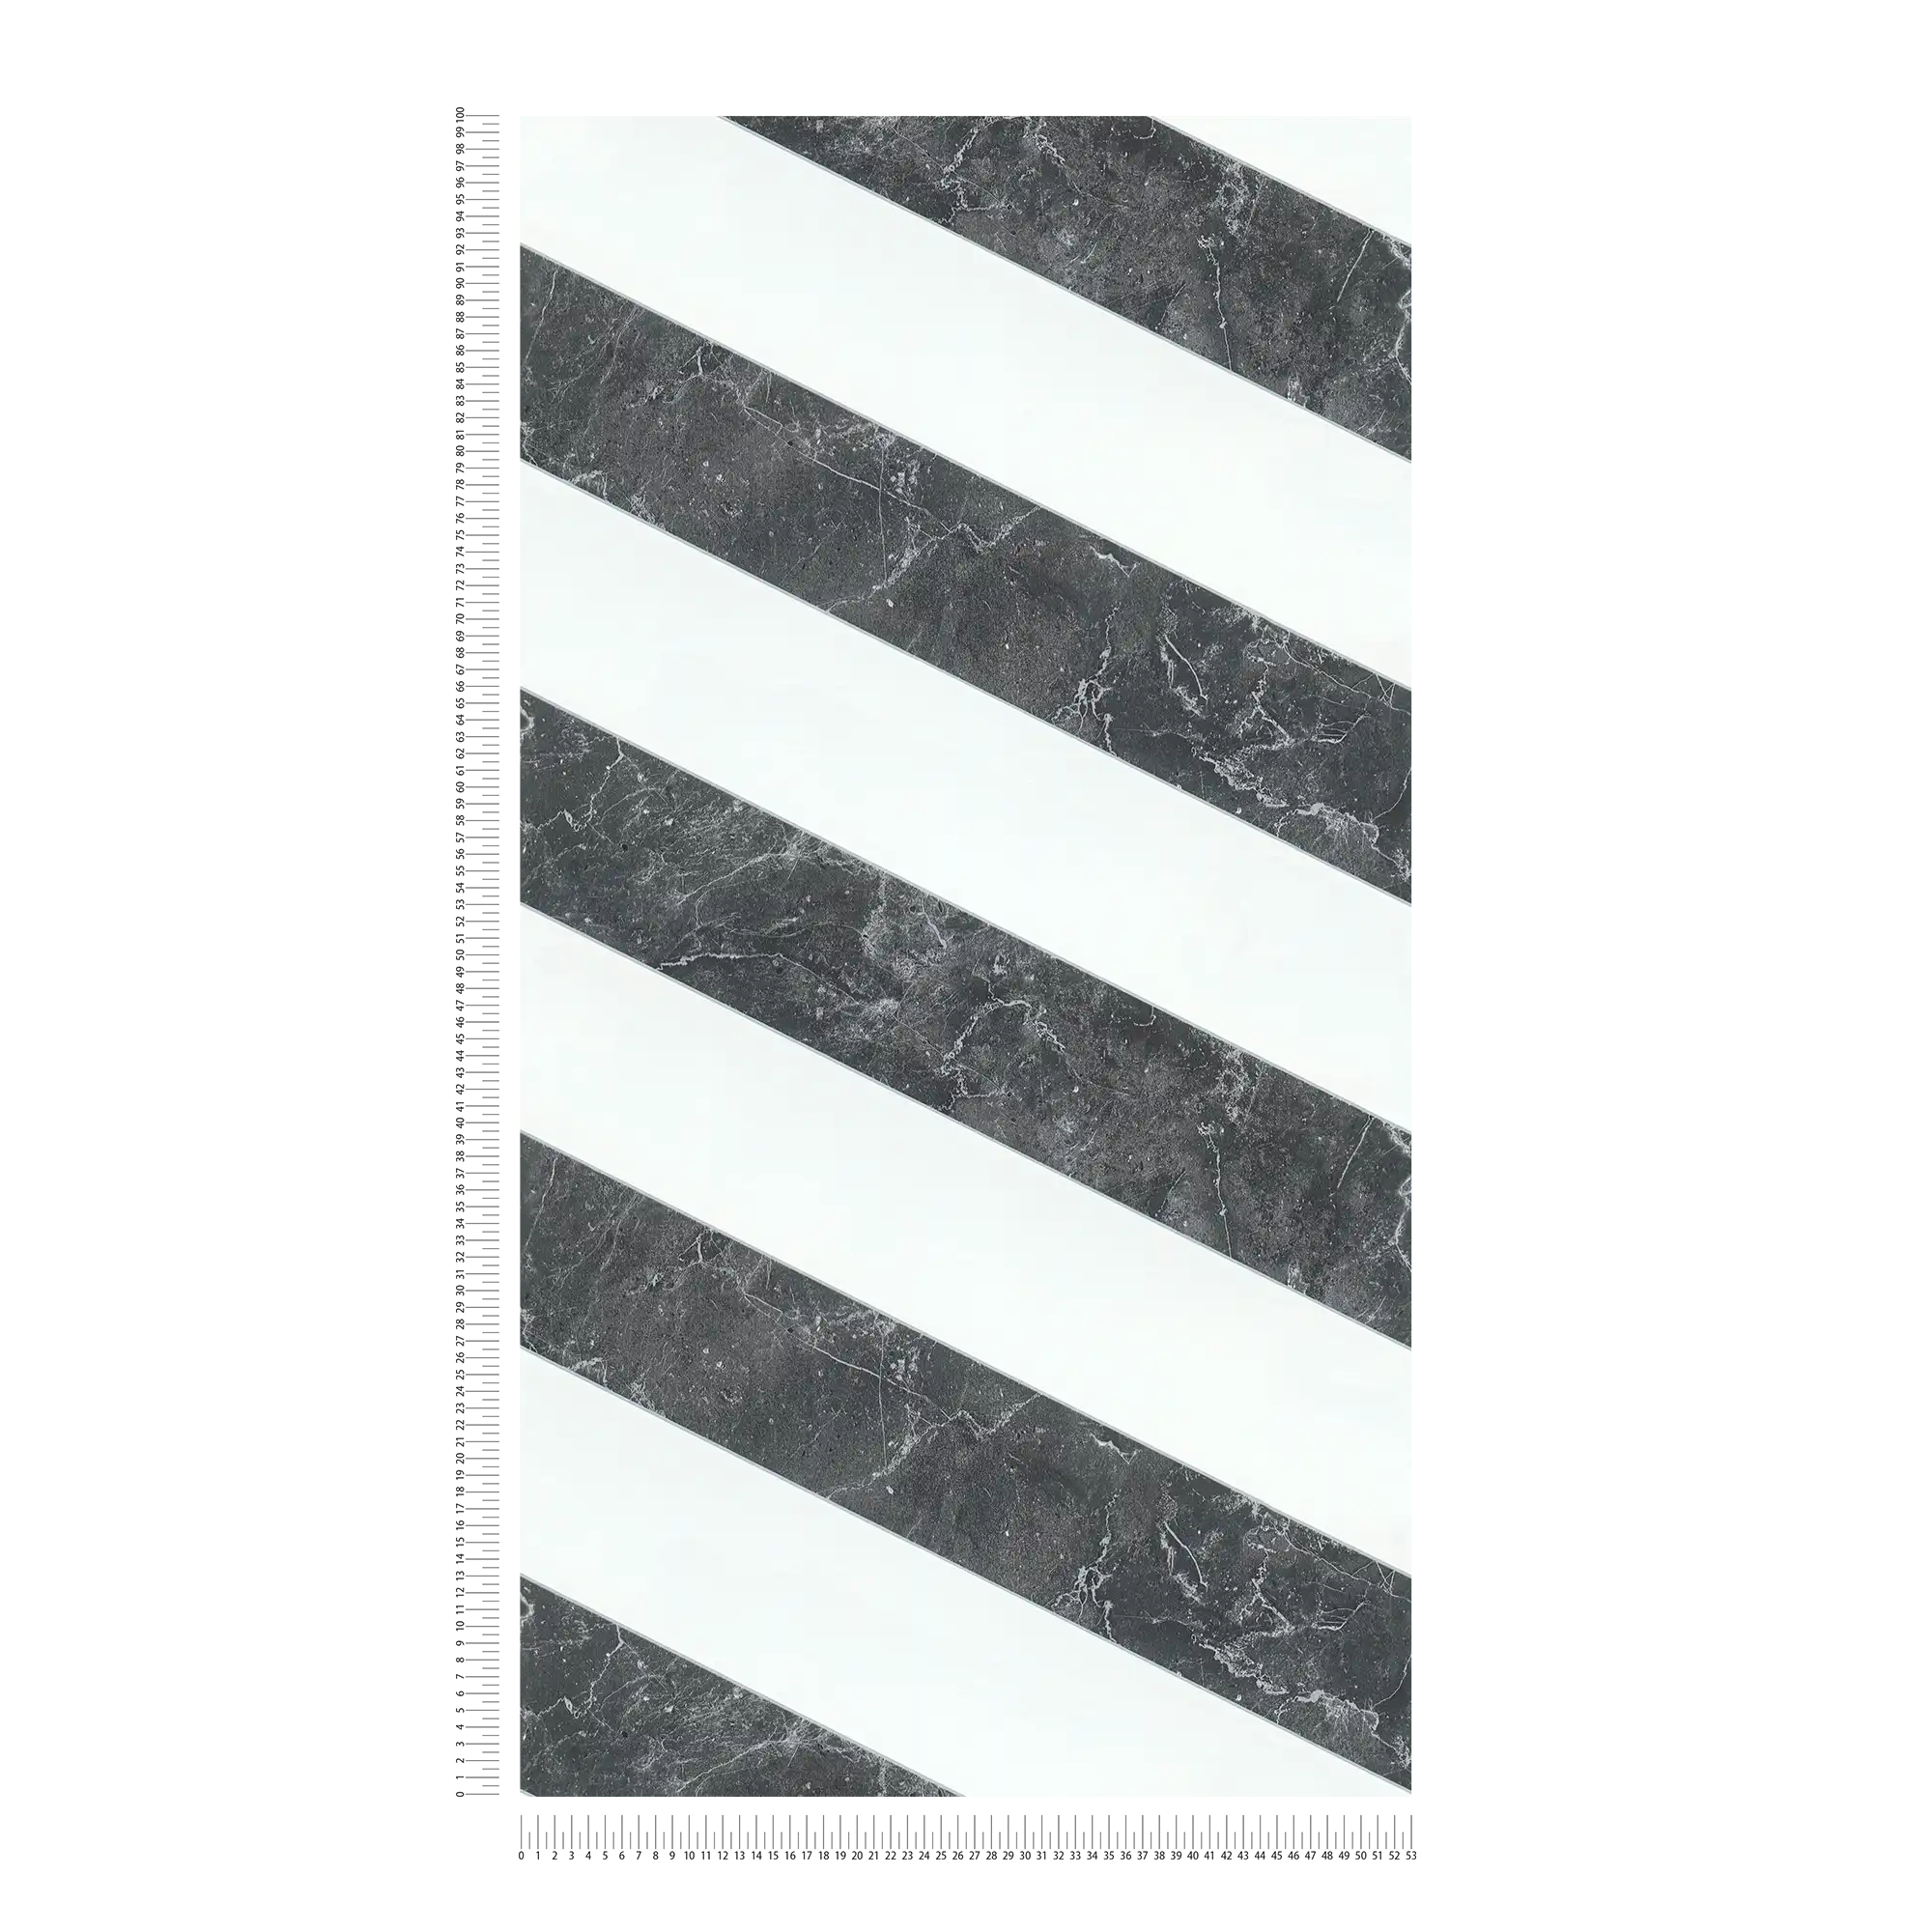             Strepen behang marmer look horizontale strepen zwart wit ontwerp
        